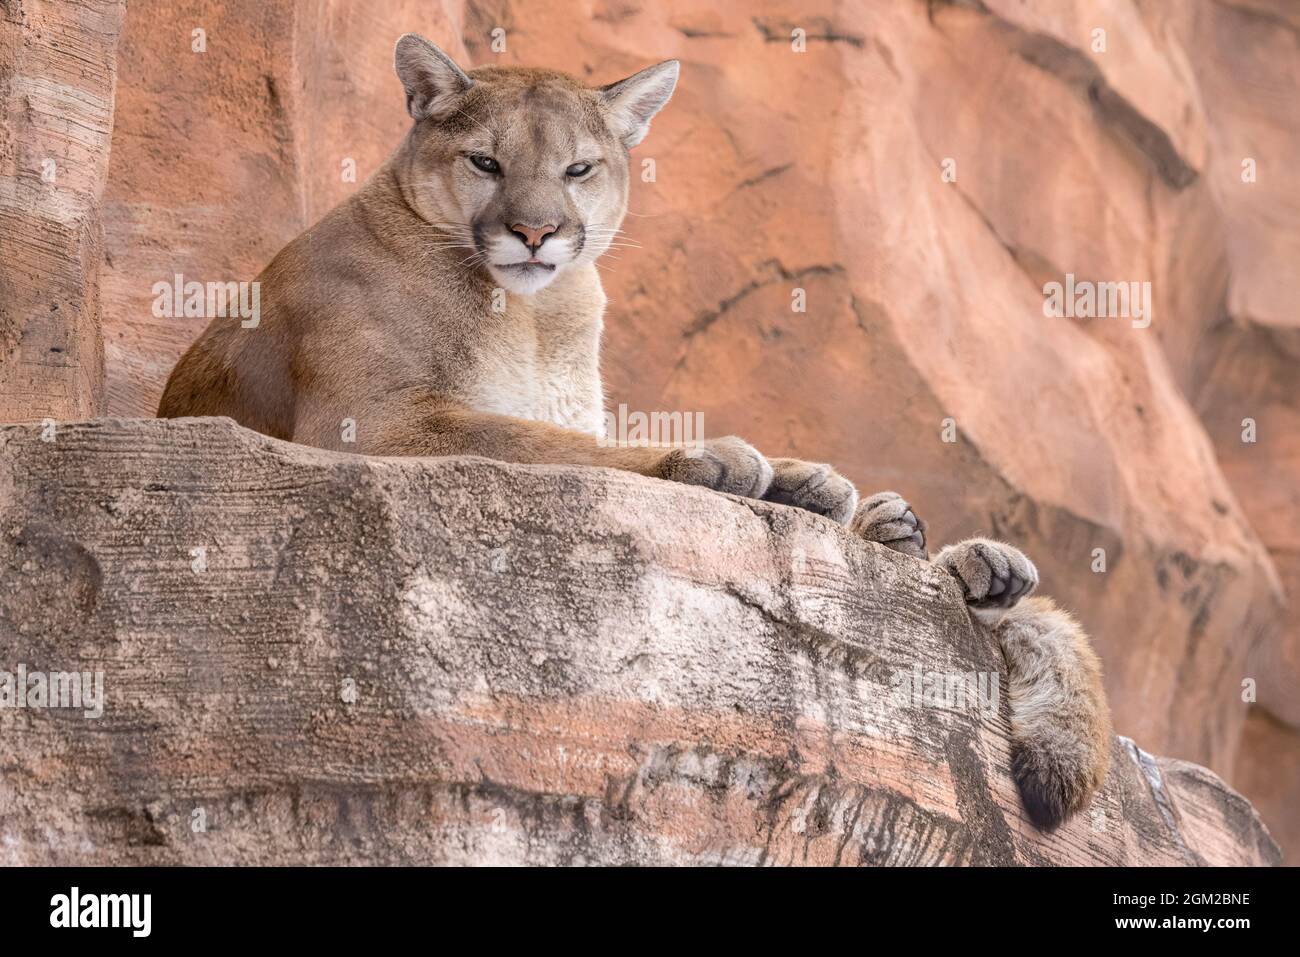 Cougar - Ein Cougar, der auf rotem Felsen ruht und auf dem die Spitze seiner Zunge zu sehen ist. Dieses Bild ist auch in Schwarzweiß verfügbar. Um zu wetteifern Stockfoto